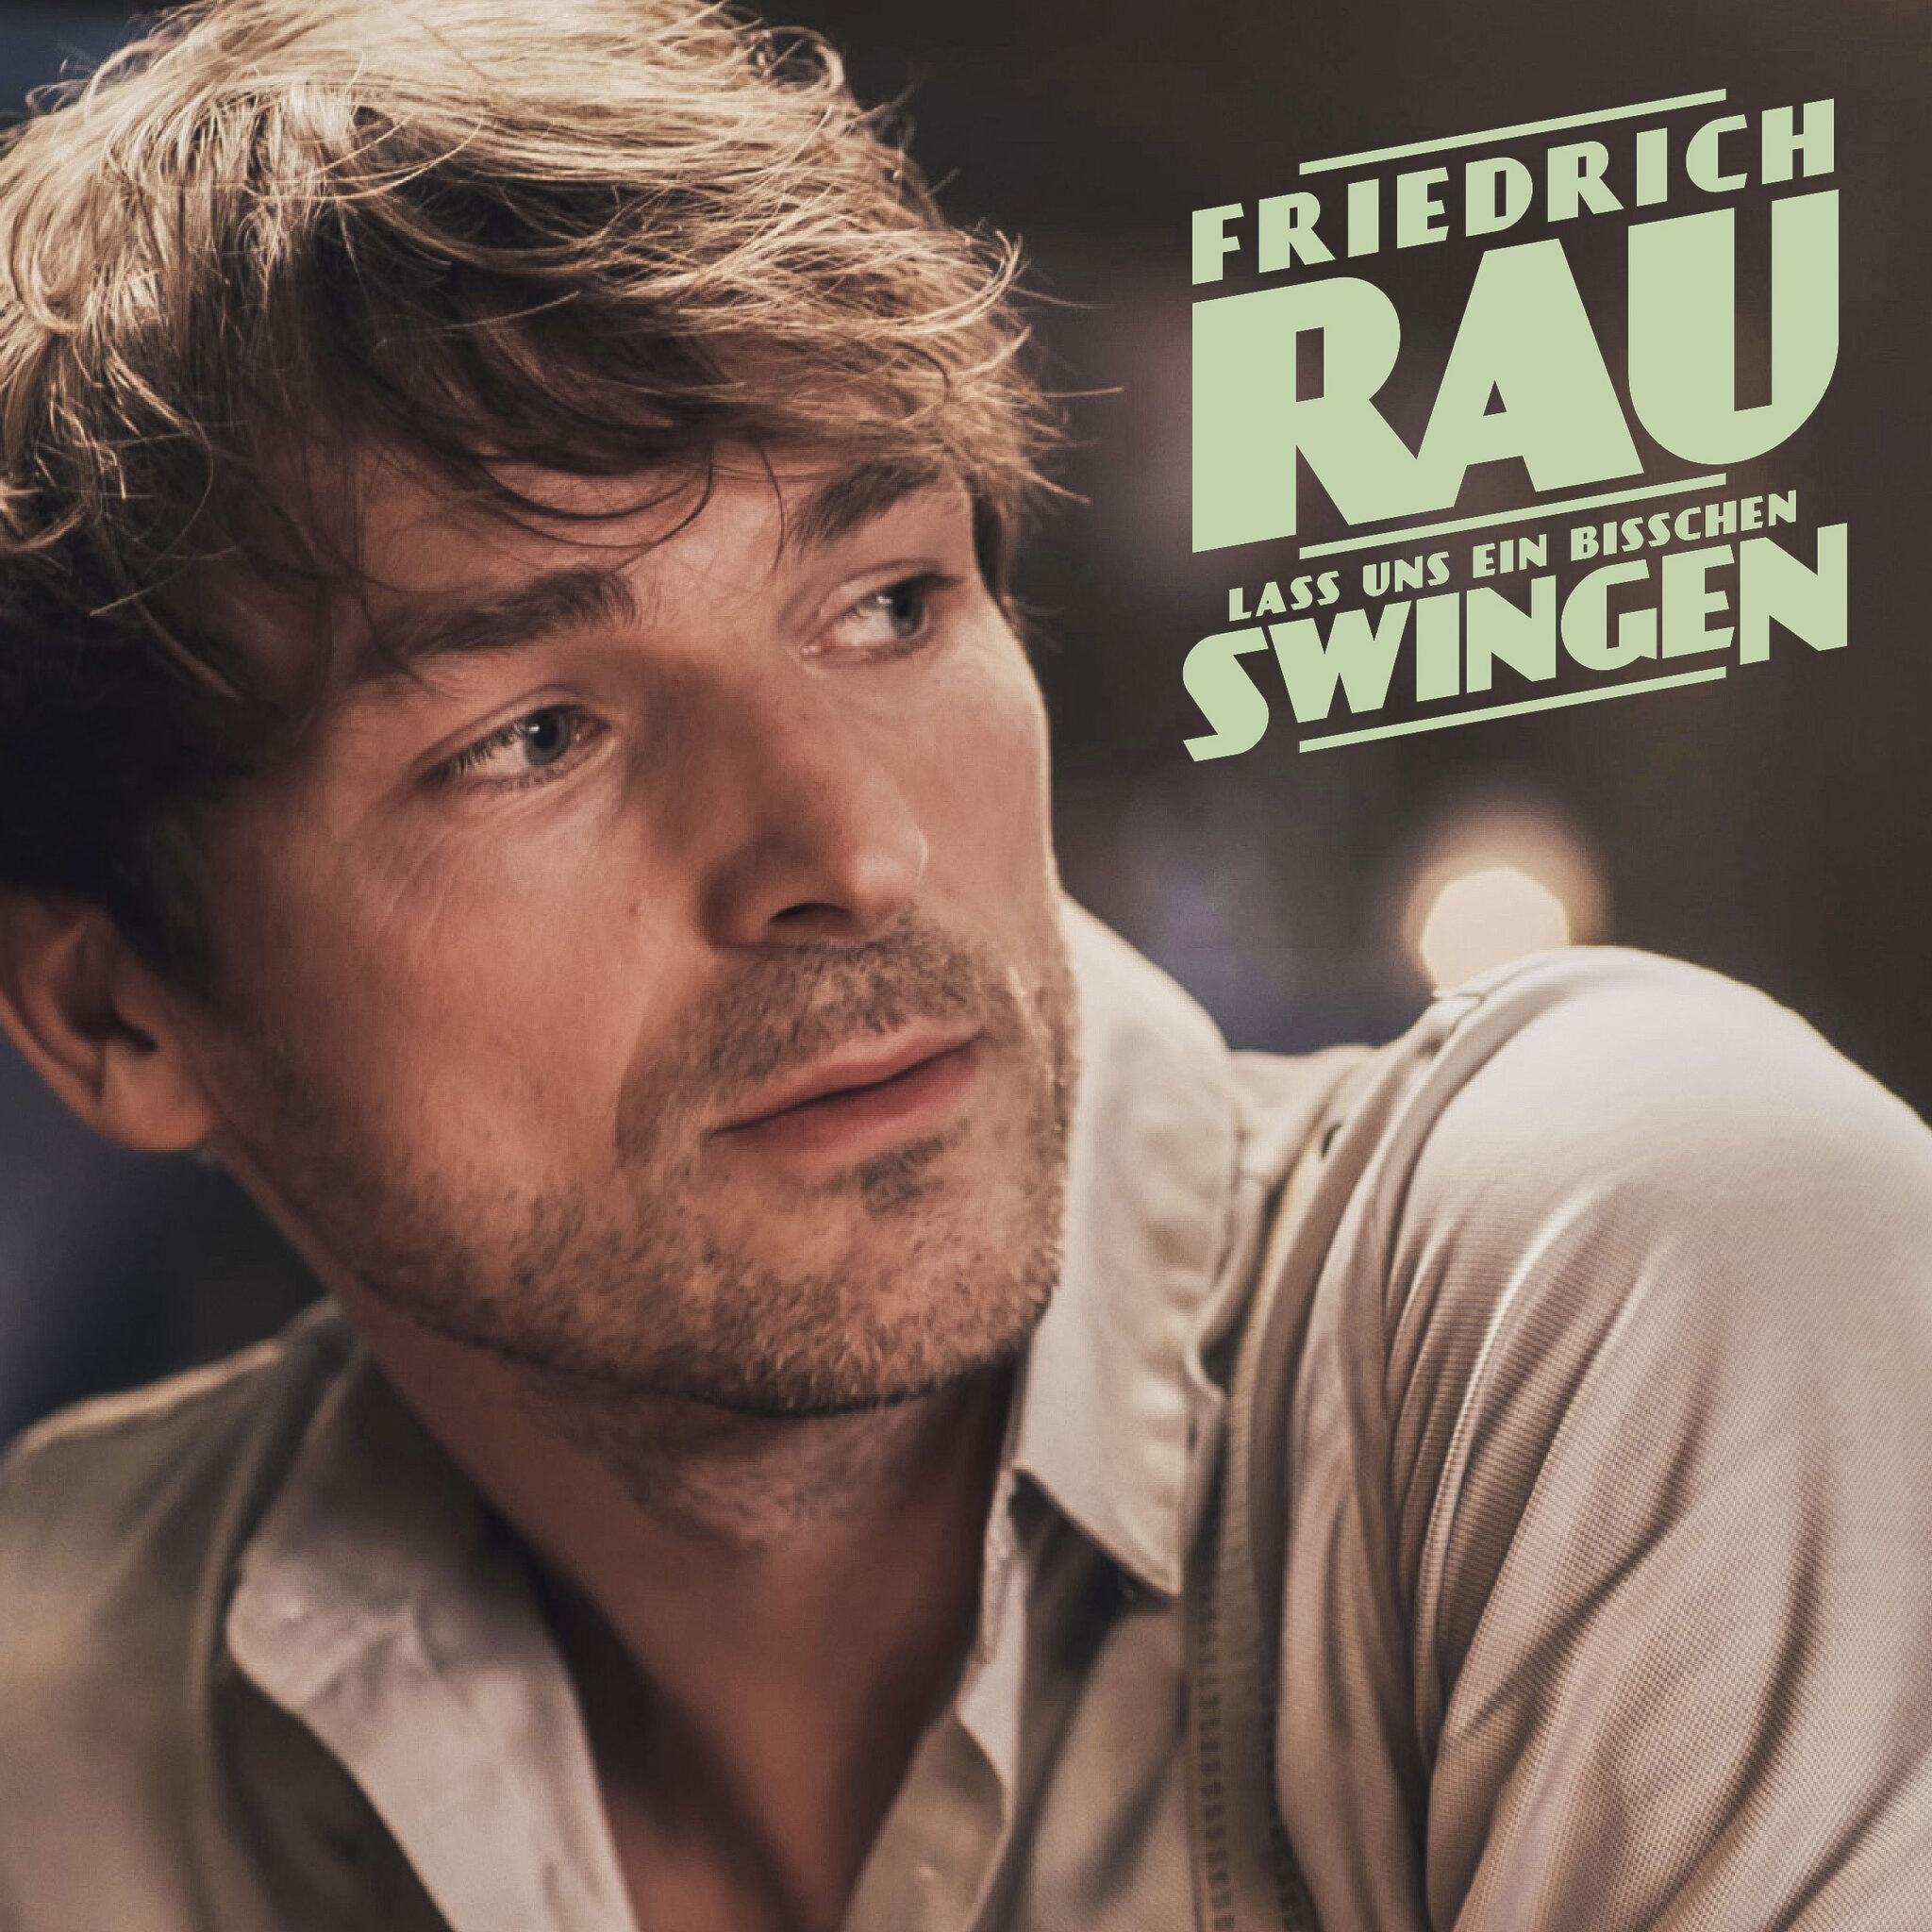 Zu sehen ist das Cover von „lass und ein bisschen Swingen“ von Friedrich Rau.